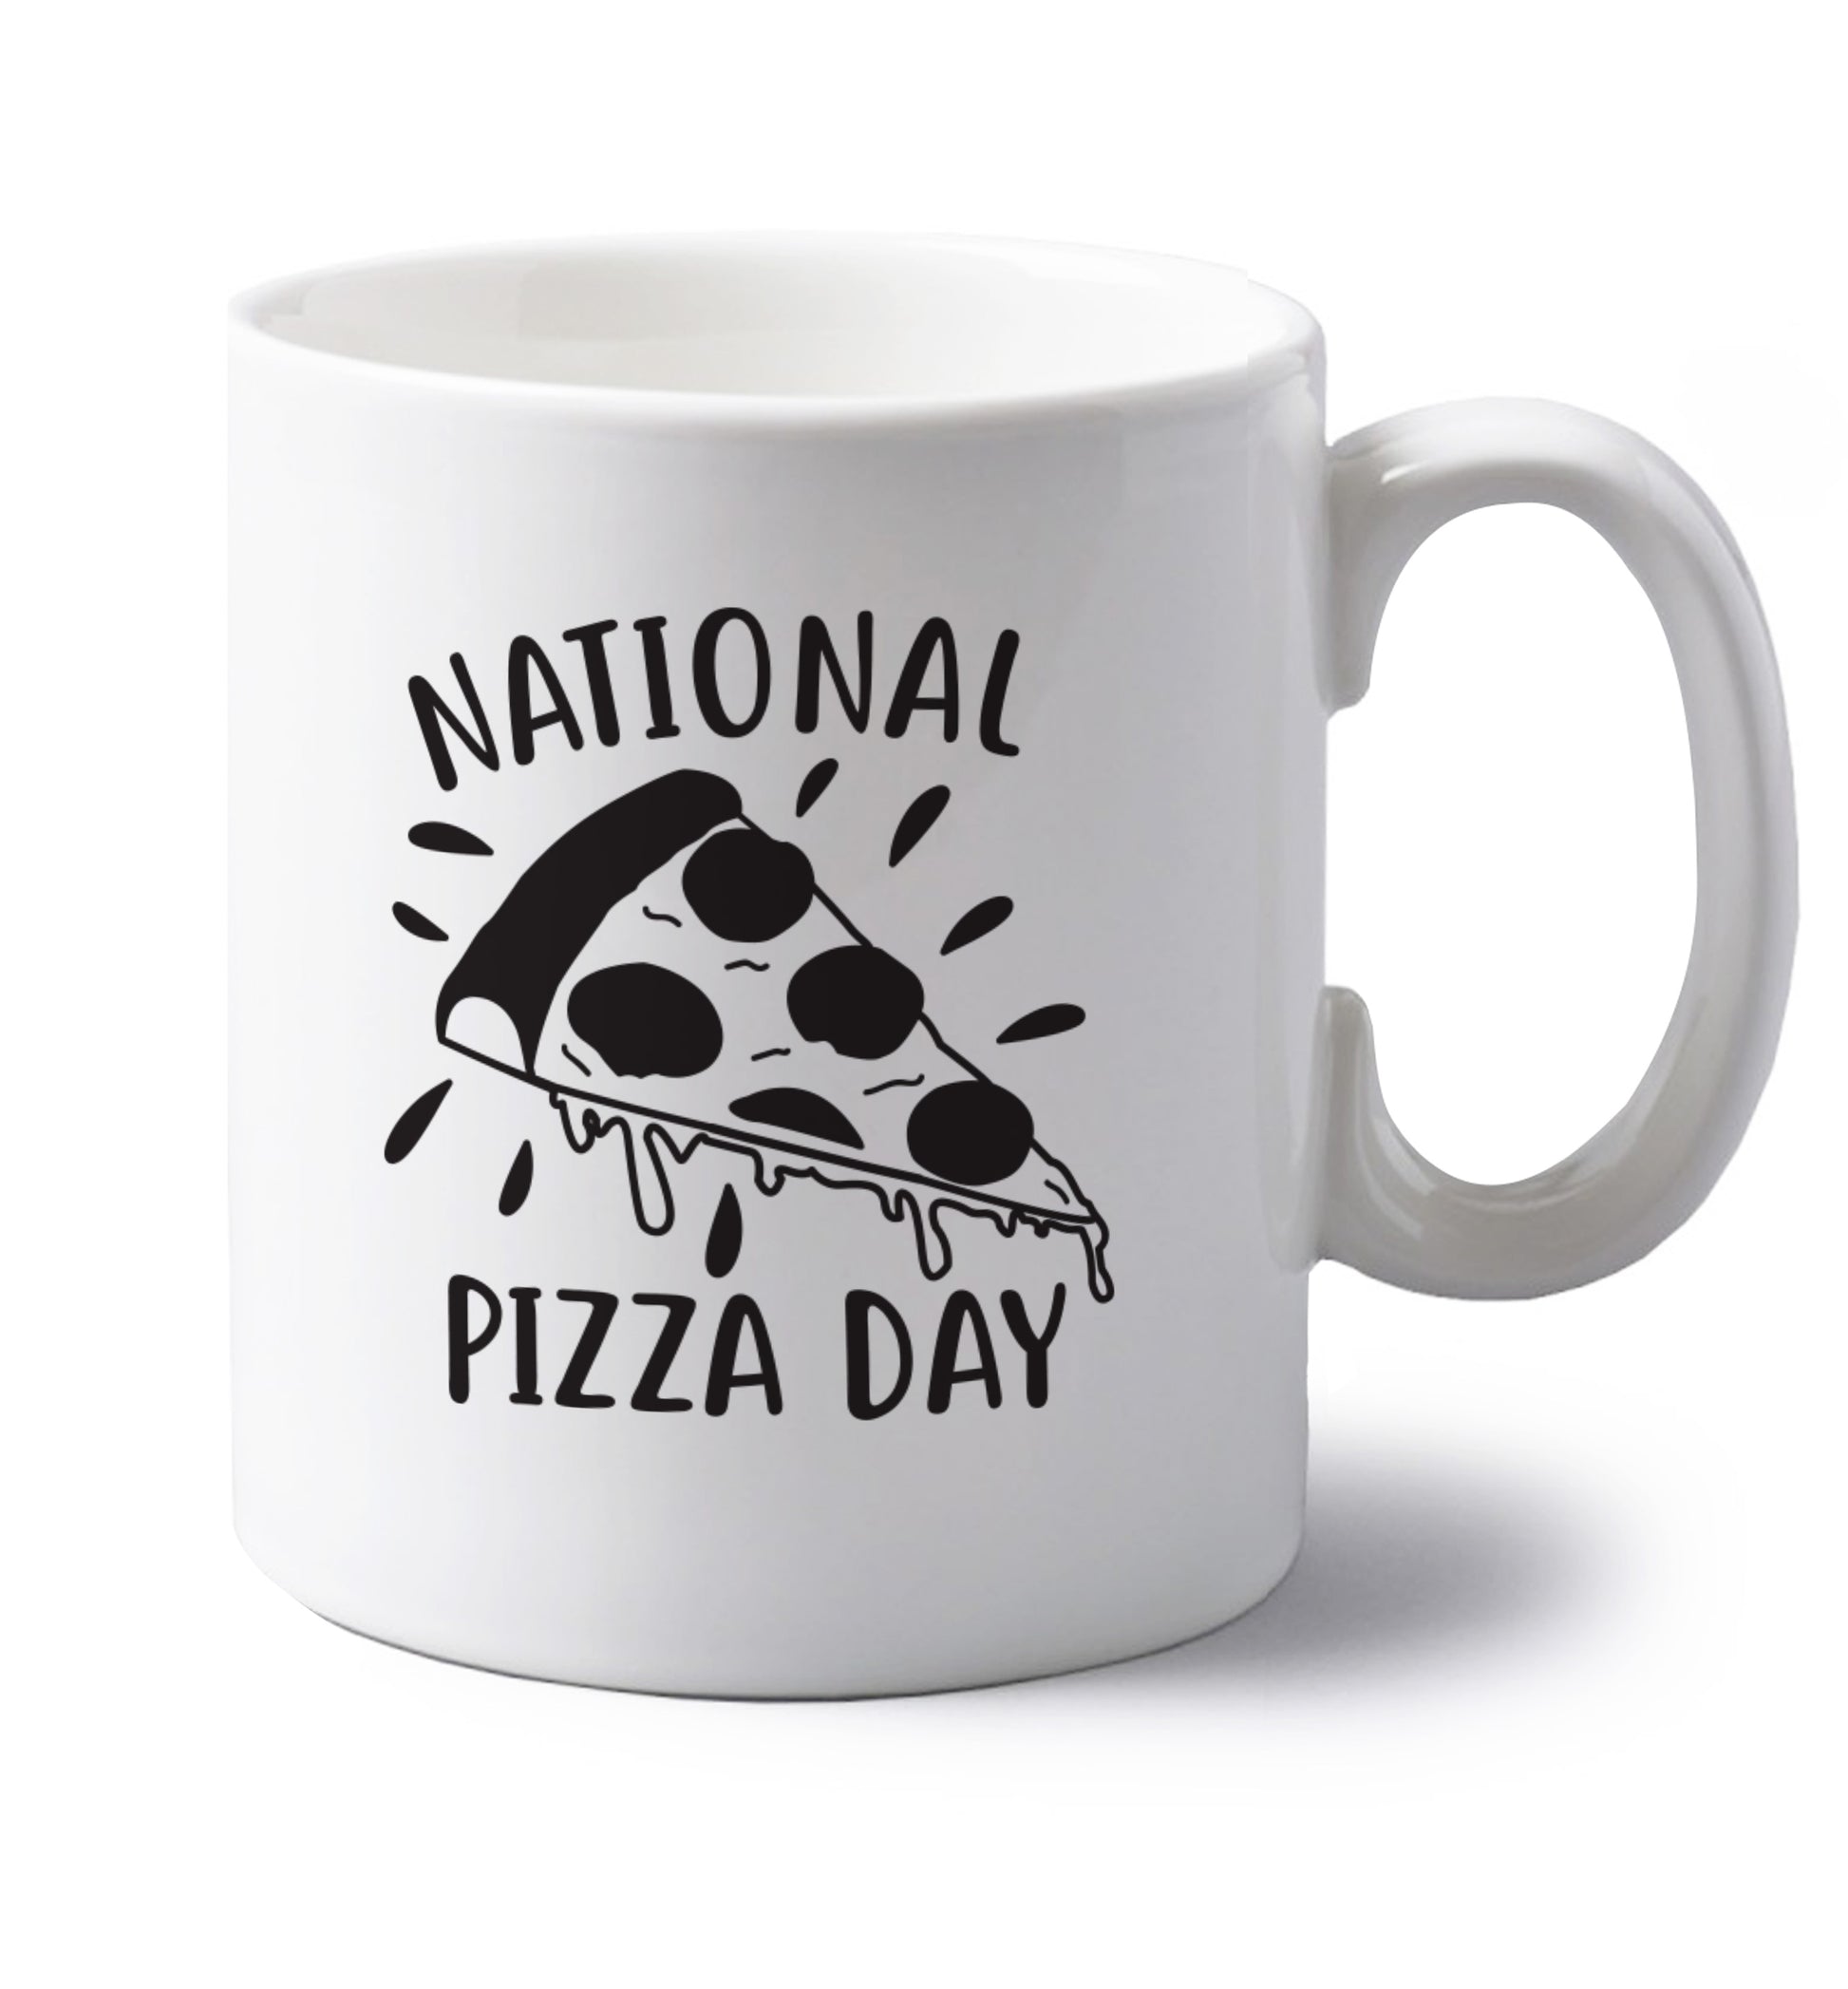 National pizza day left handed white ceramic mug 